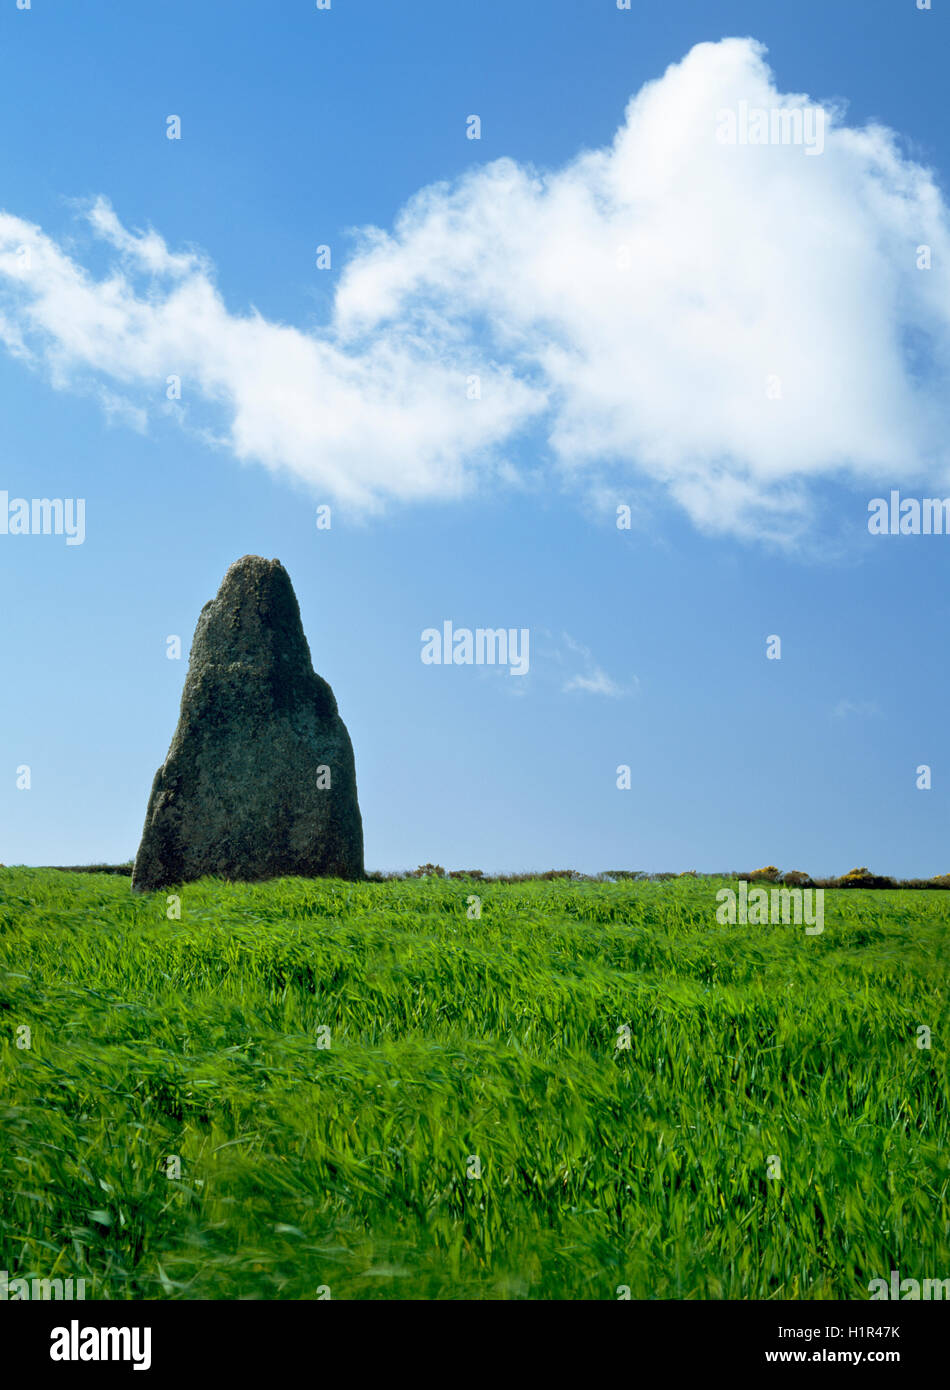 Par tradition, le Blind Fiddler monolithe préhistorique, West Penwith, Cornwall, est un musicien se tourna vers pierre pour jouer le Jour du Sabbat. Banque D'Images